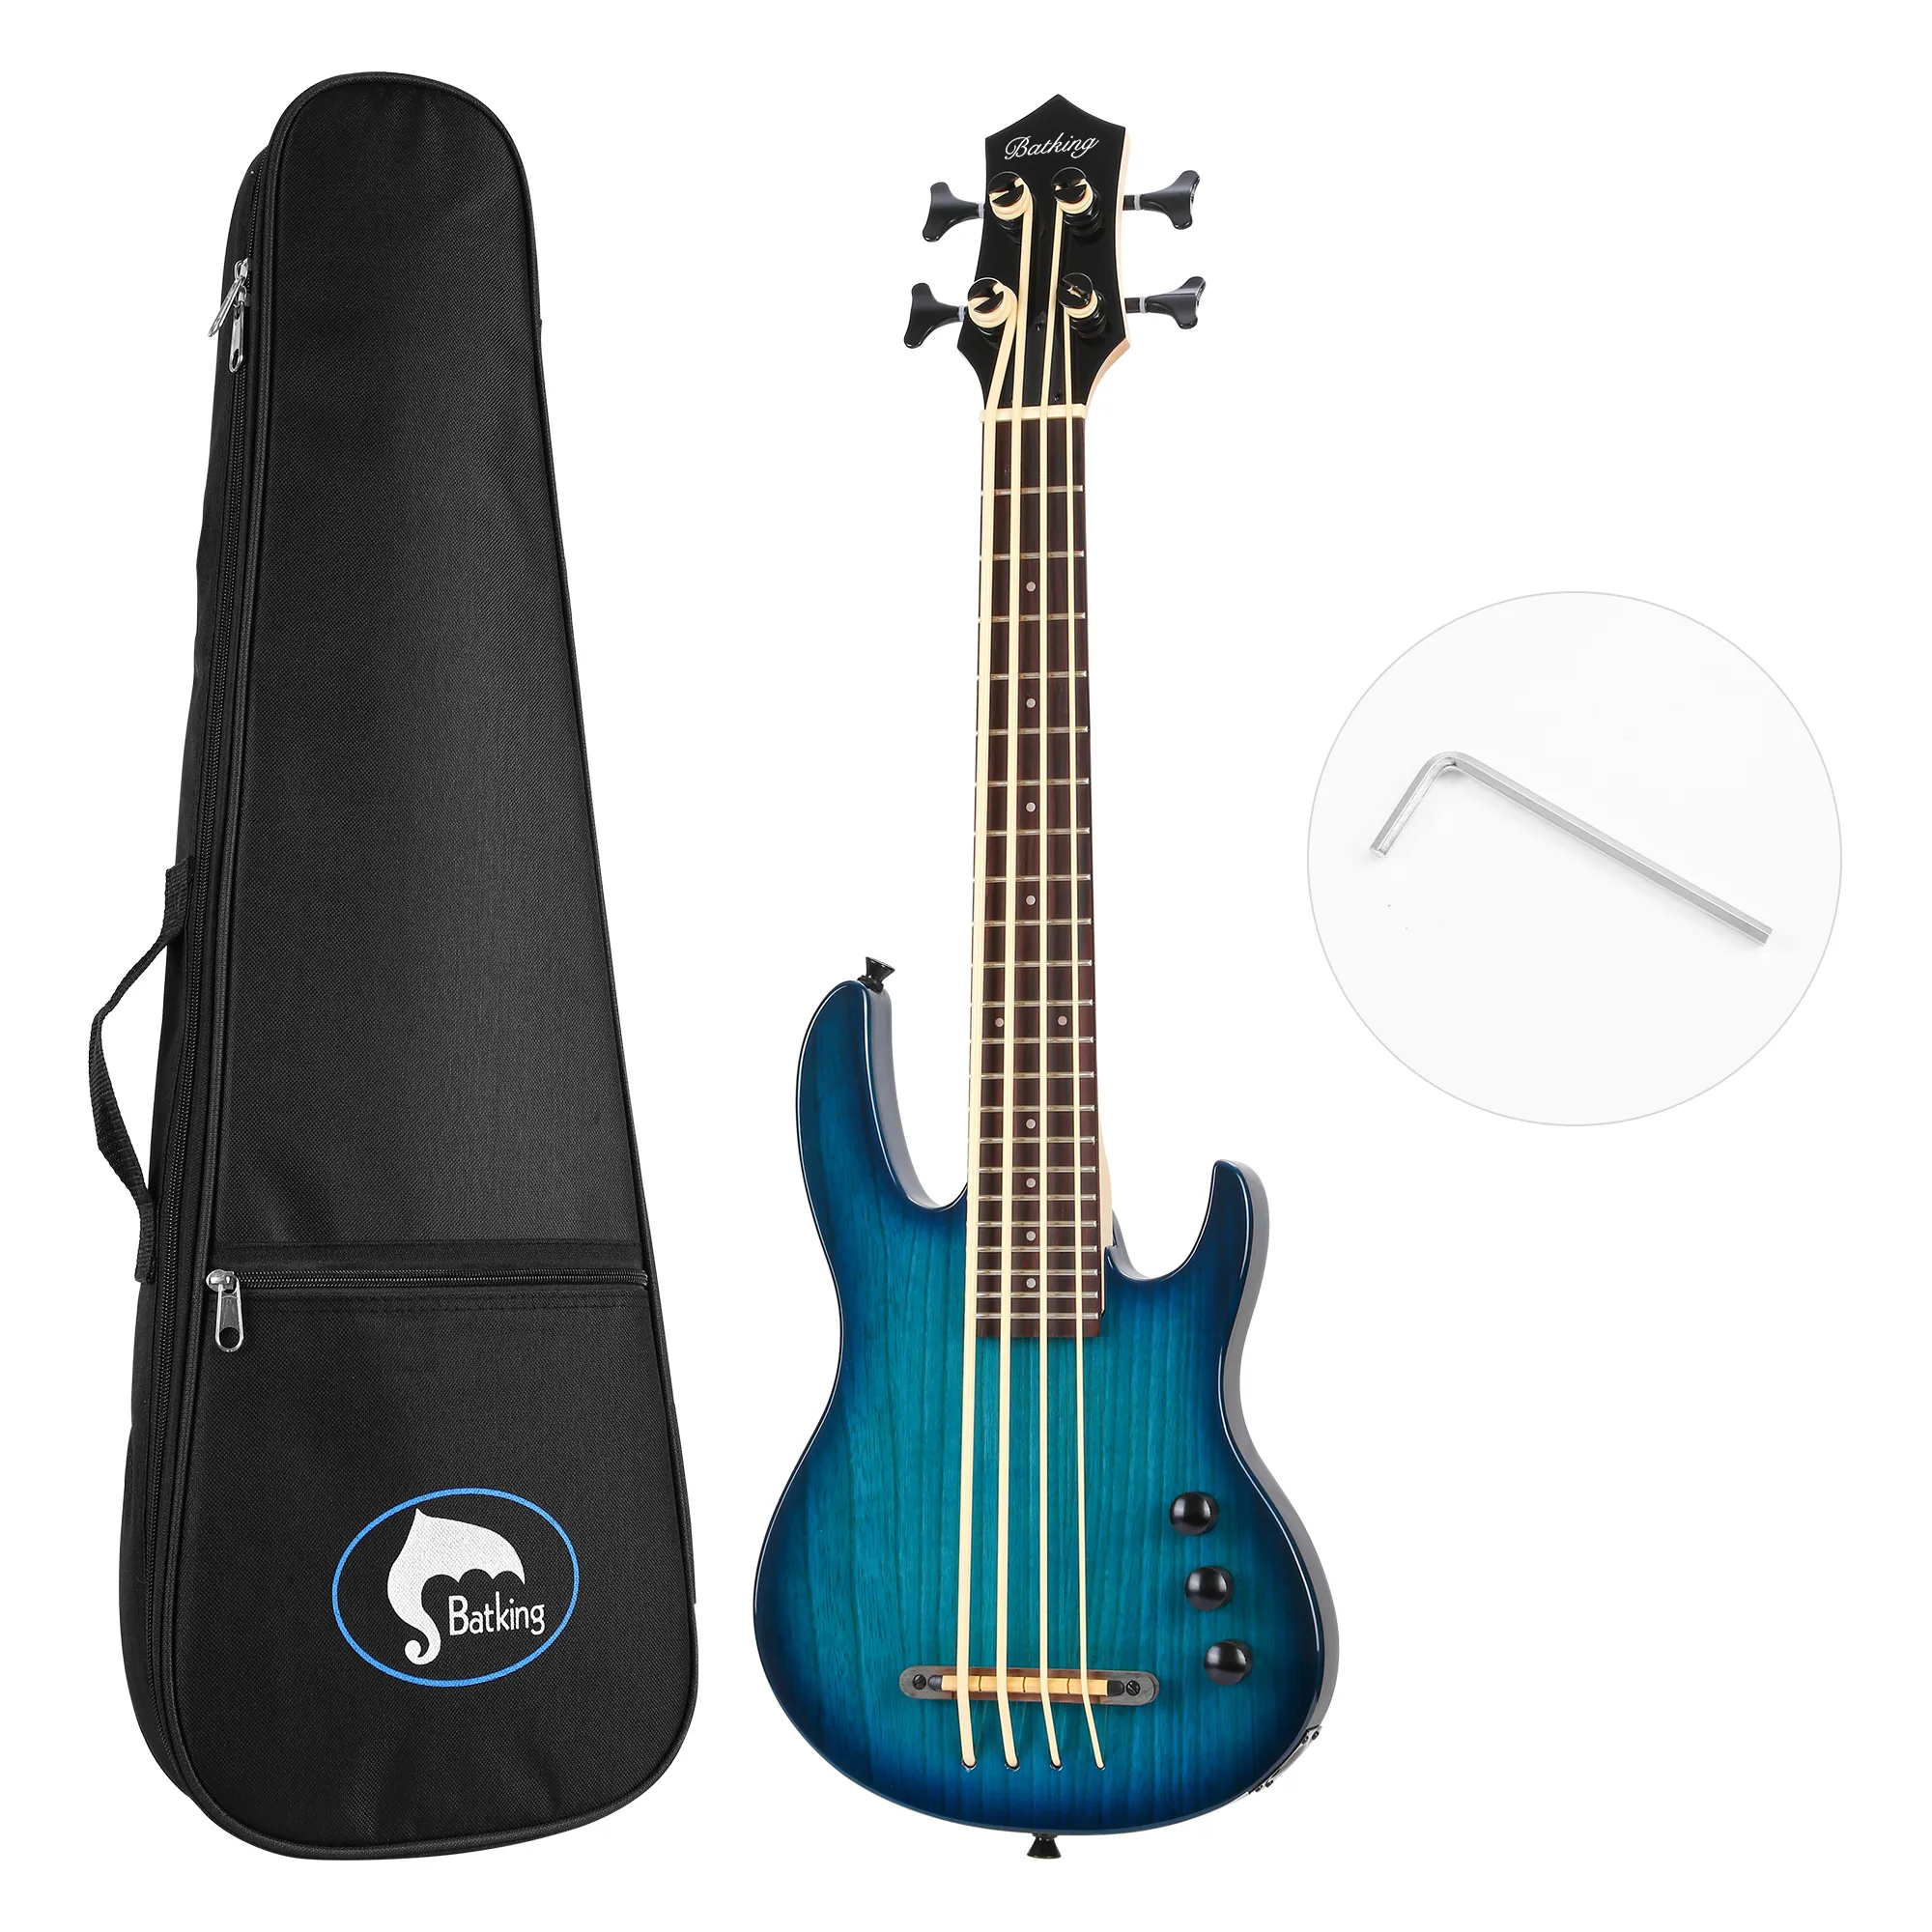 Ukulele Electric Bass Uke Guitar Mini 4StringAquila String from Italy Eadg Ashwood Body W/Gig Bag blue color